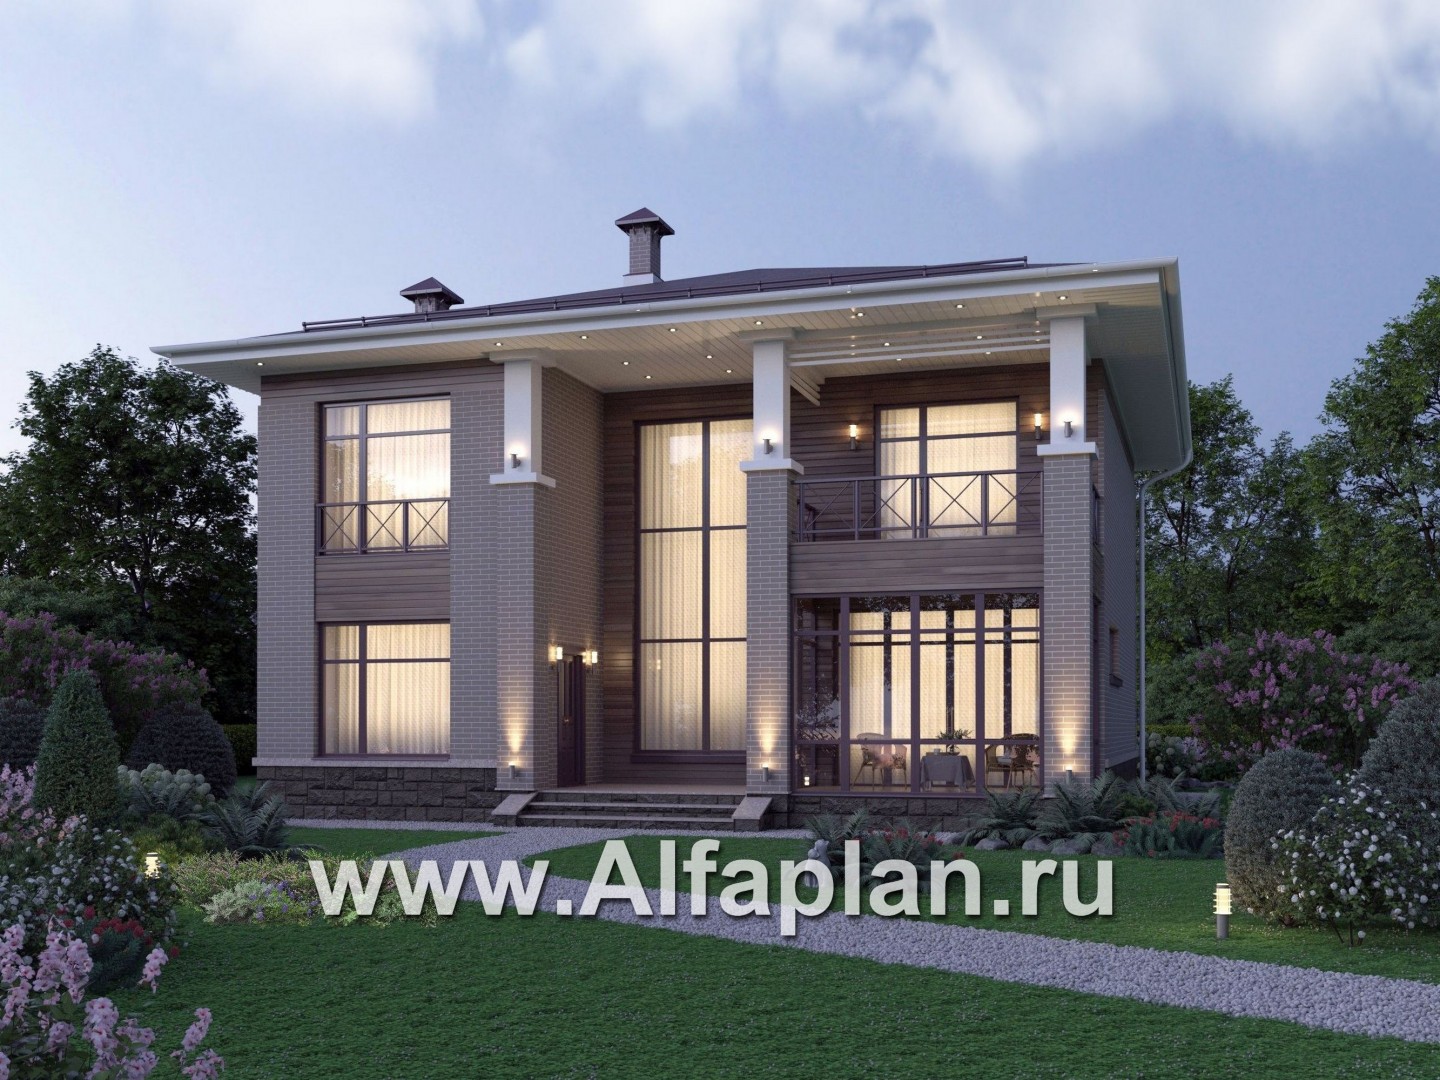 Проекты домов Альфаплан - "Римские каникулы" - проект дома с двусветной гостиной - основное изображение